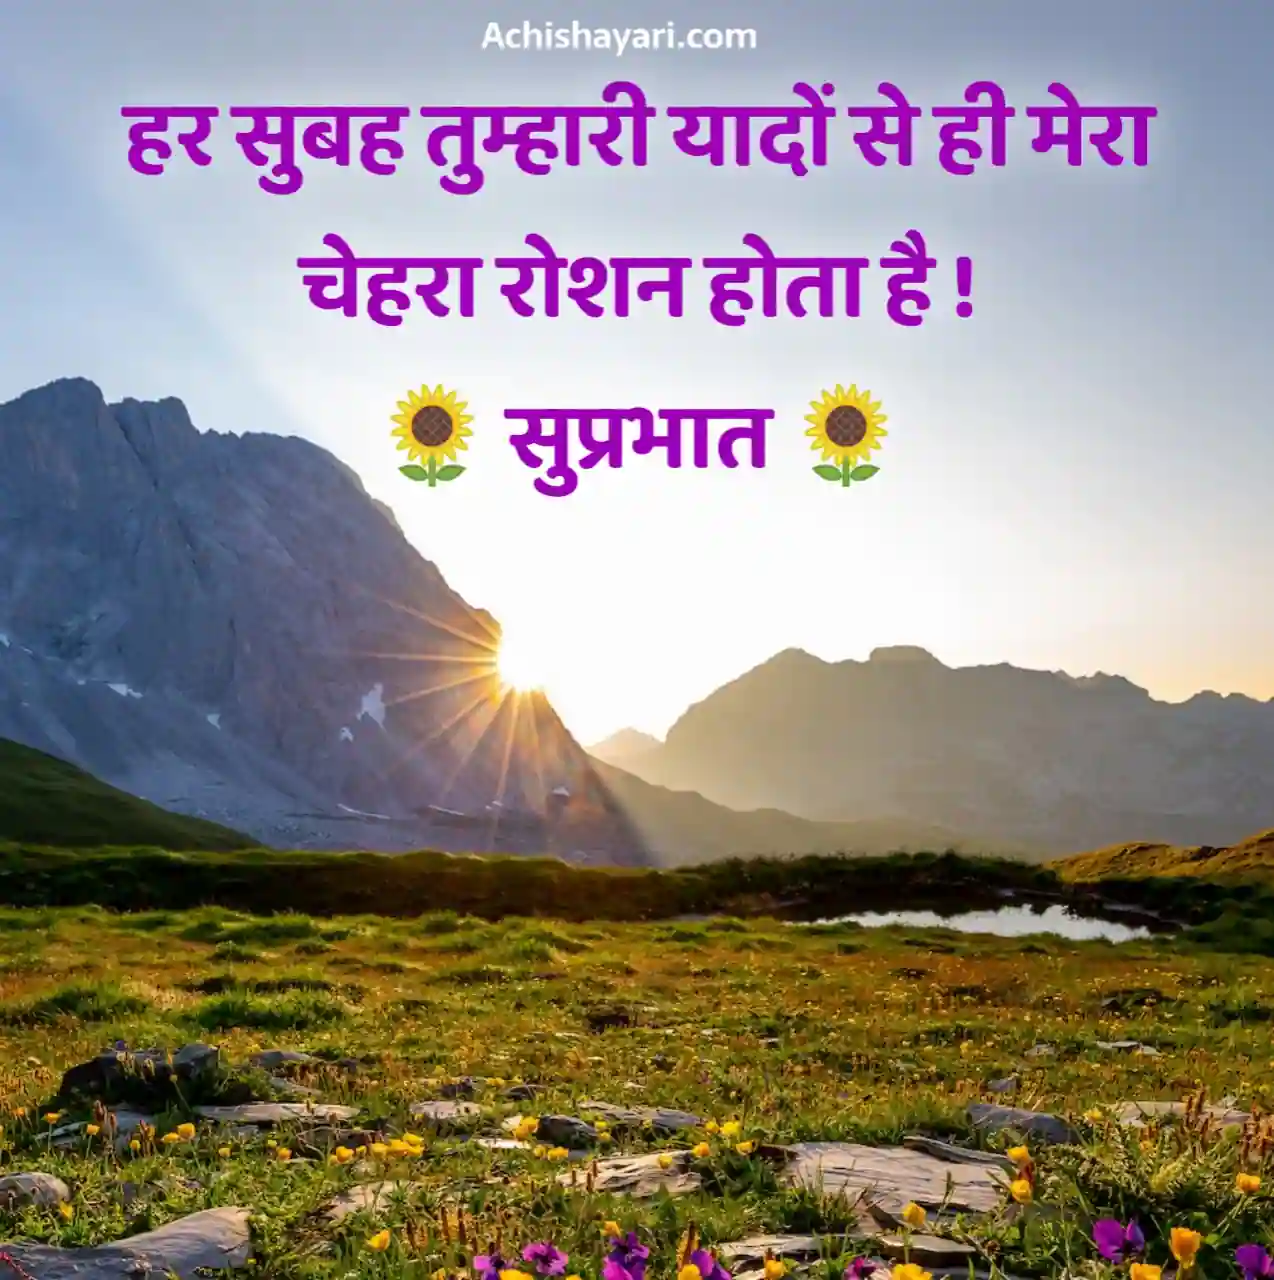 Good Morning Quotes Hindi Images